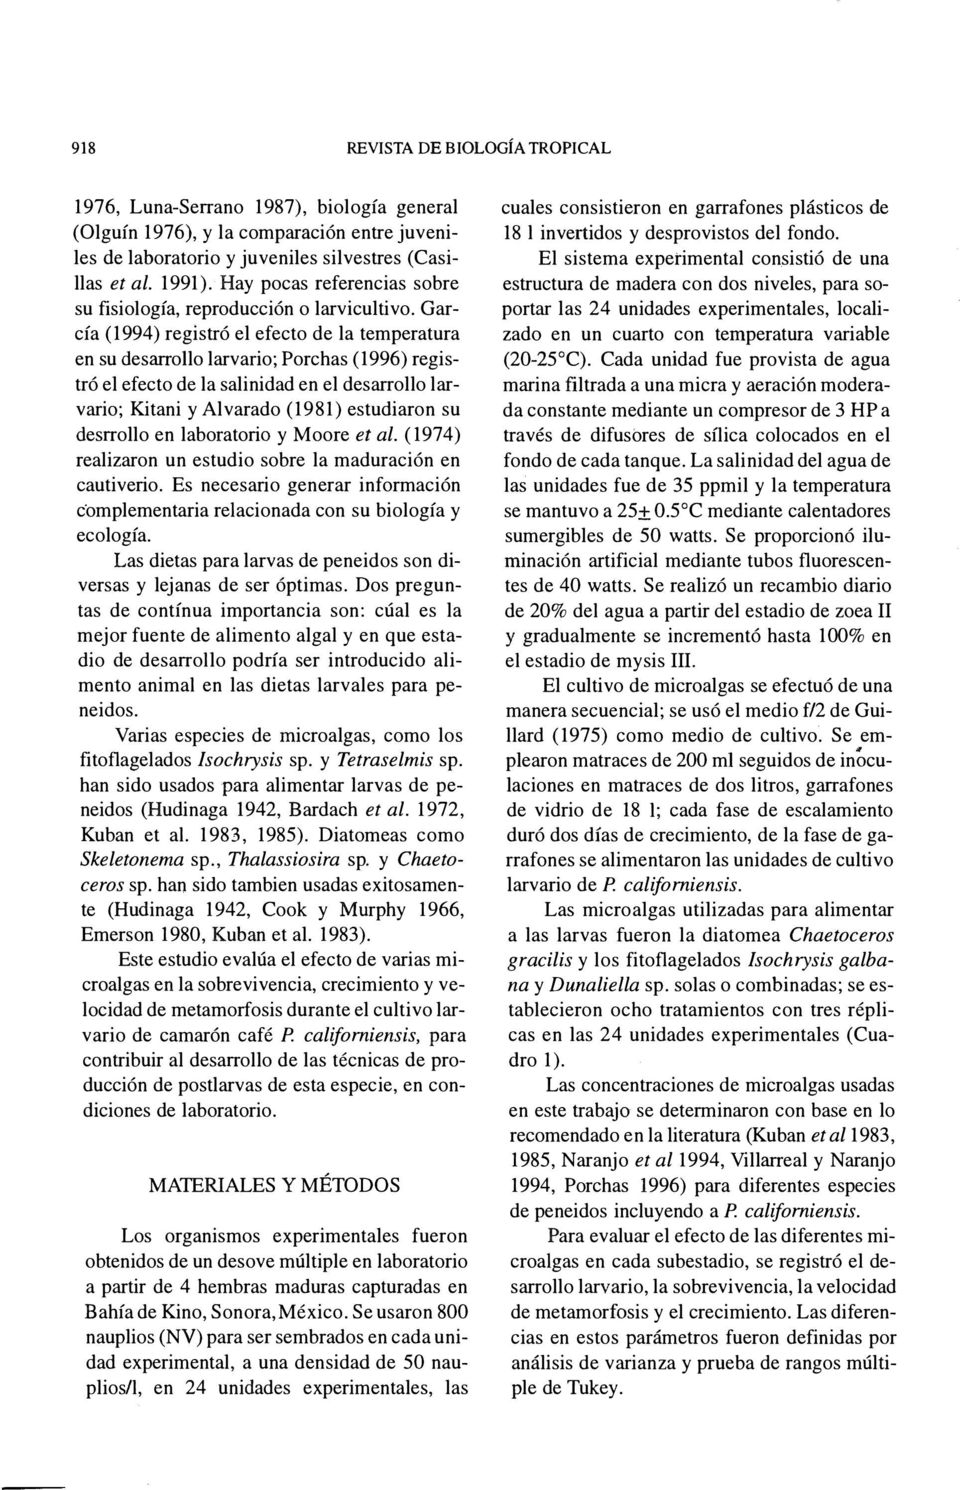 García (1994) registró el efecto de la temperatura en su desarrollo larvario; Porchas (1996) registró el efecto de la salinidad en el desarrollo larvario; Kitani y Alvarado (1981) estudiaron su